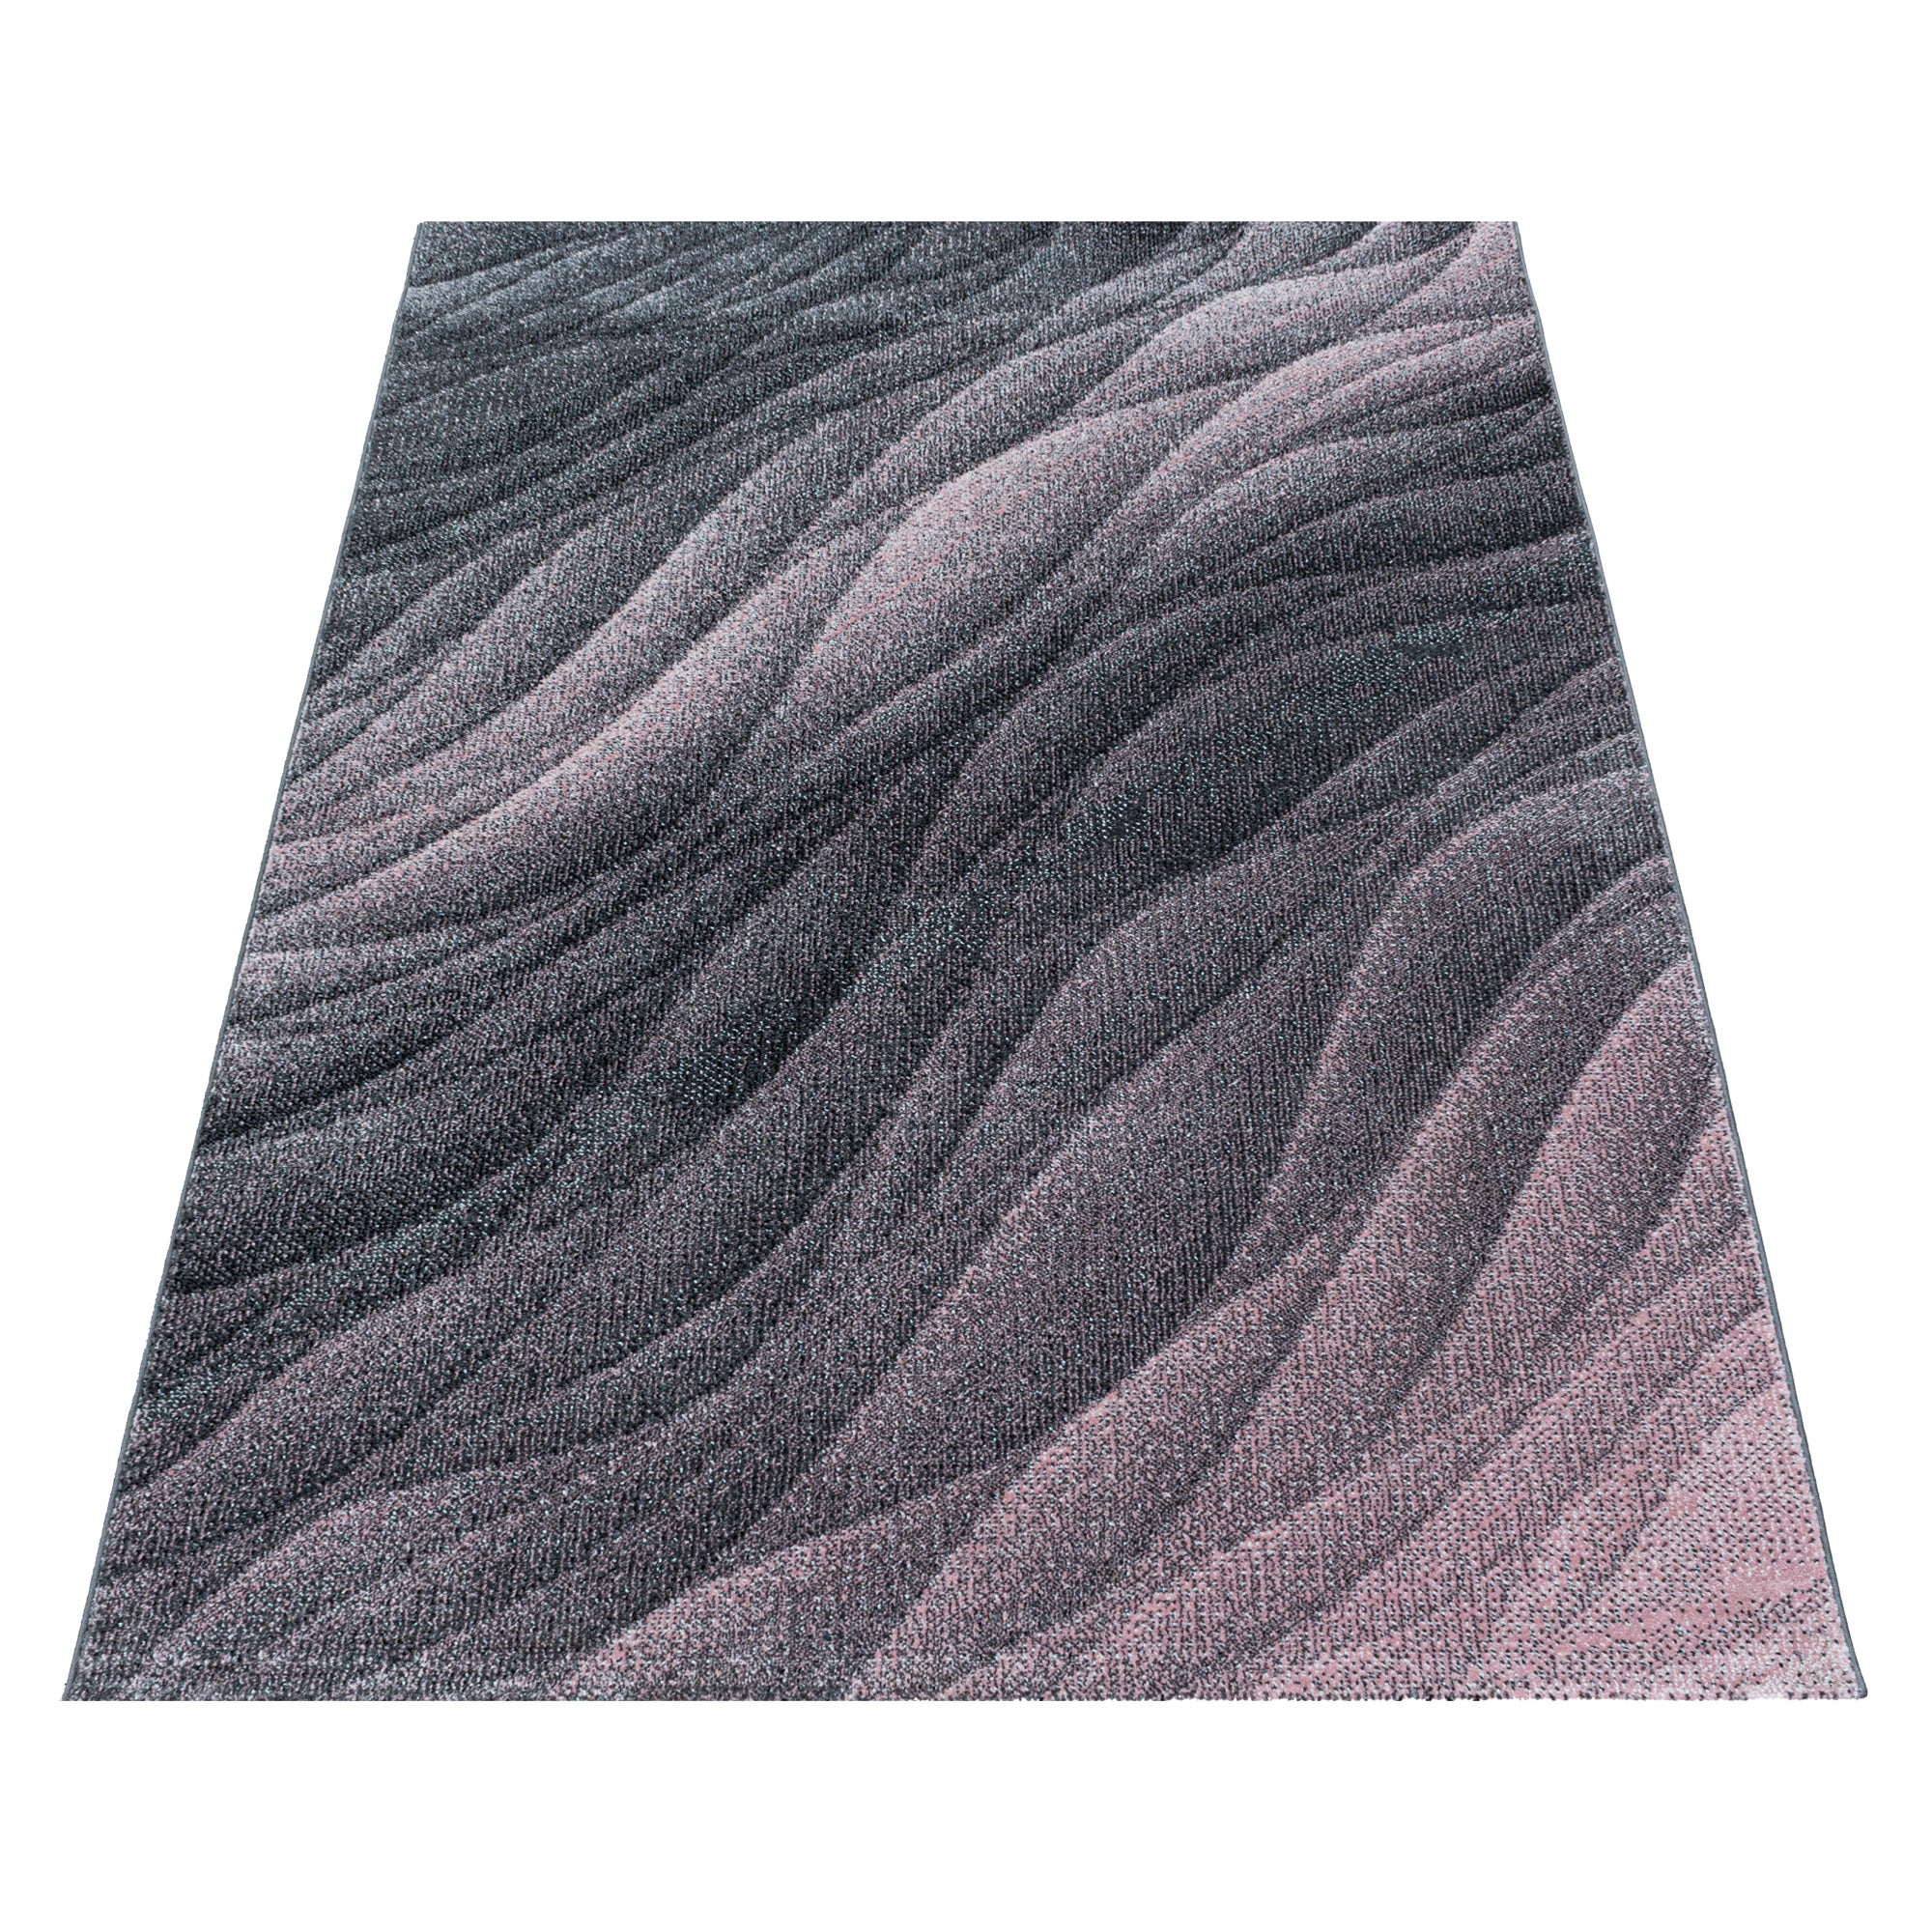 Kurzflor Teppich Rosa Grau Muster Modern Design Wellen Linien Wohnteppich Weich